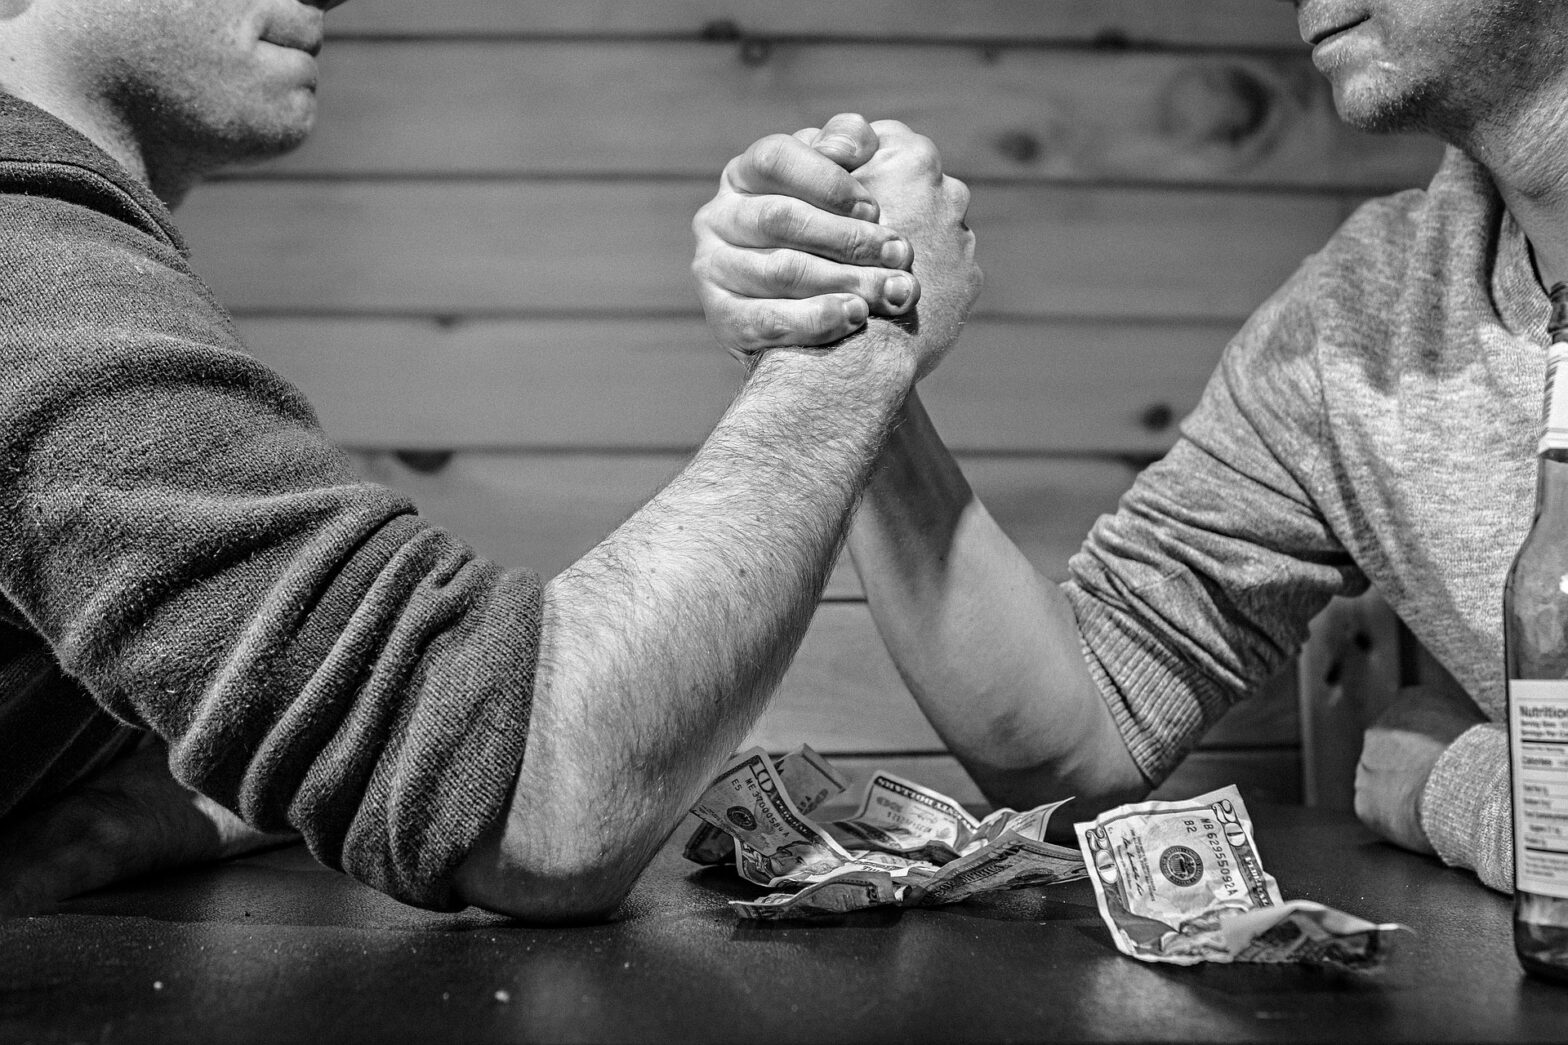 Two men arm wrestle for money.